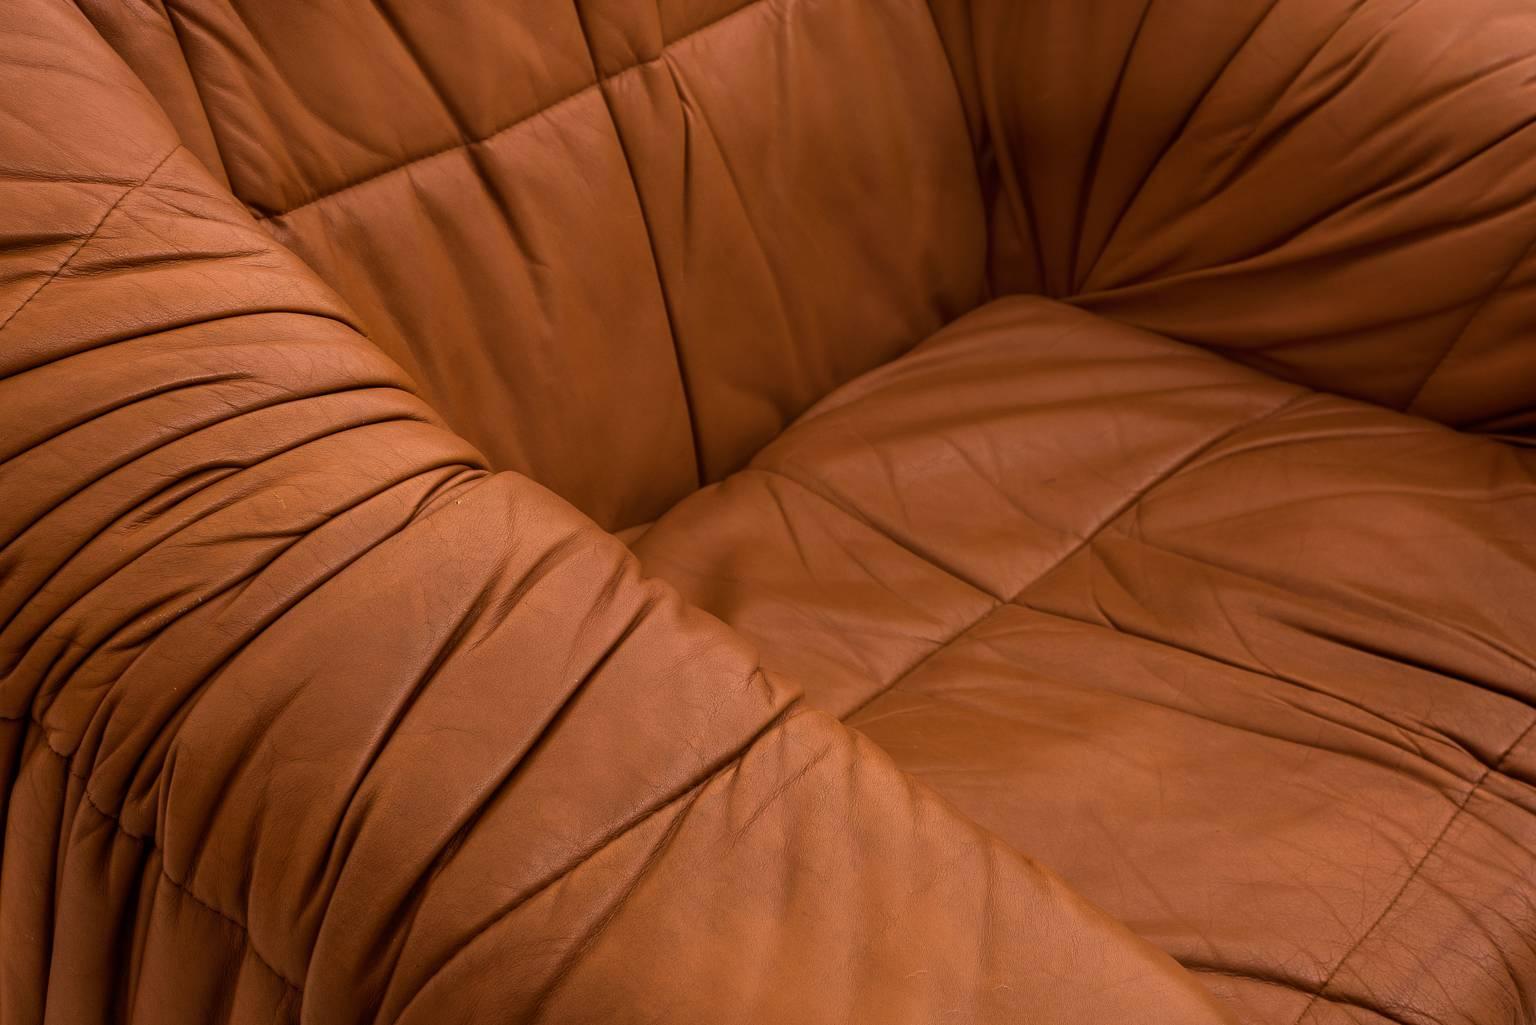 Leather Distinctive 'Piumino' Lounge Chairs by De Pas D'urbino & Lomazzi for Dell'Oca